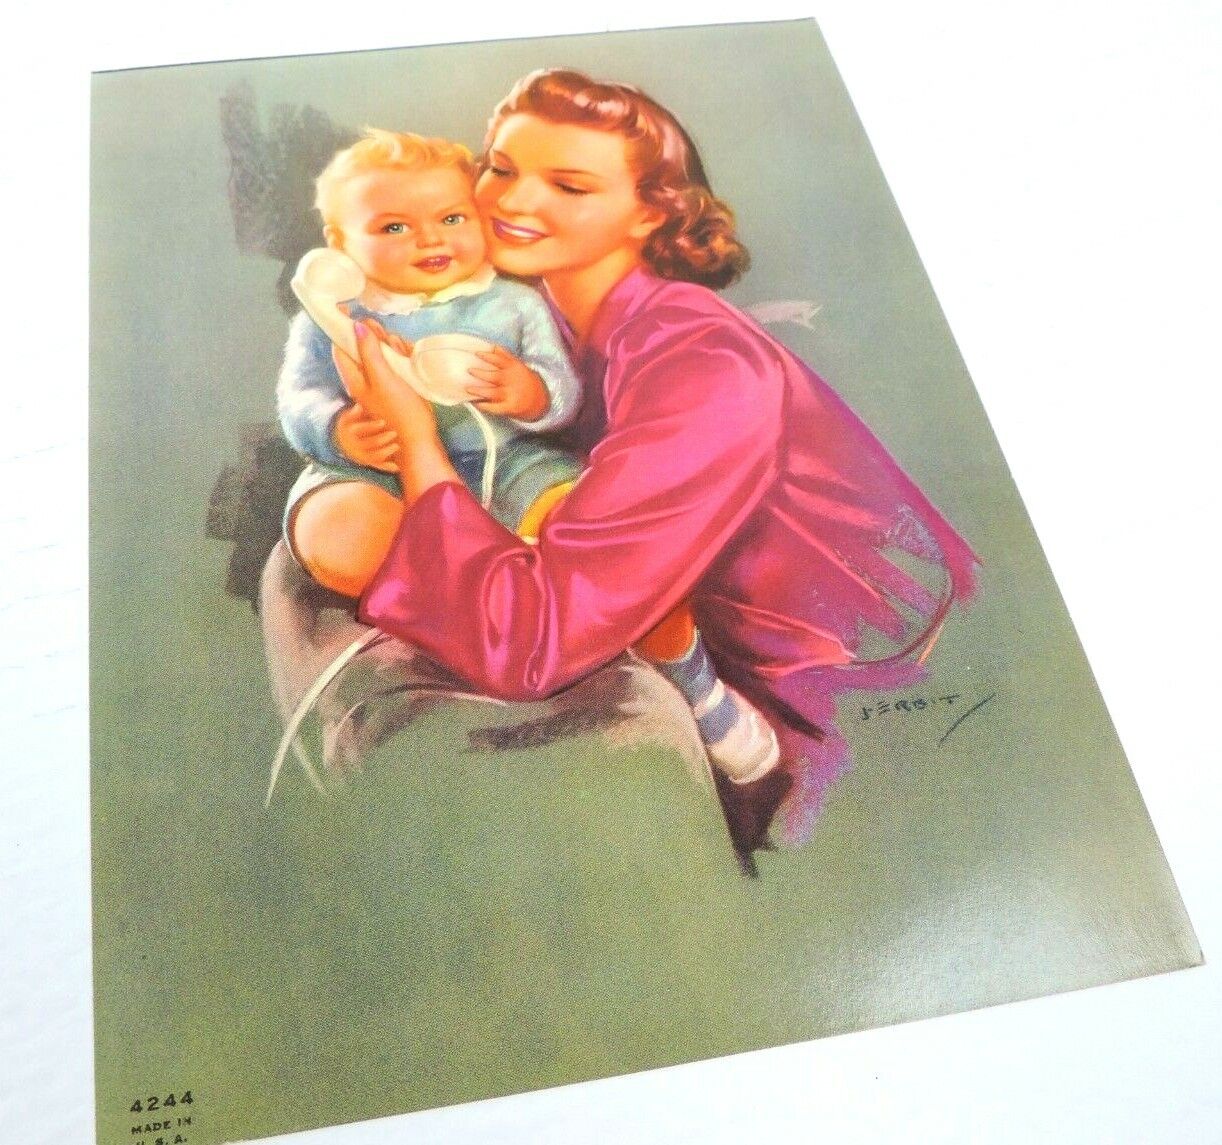 Baby Boy Mother Telephone Vintage Calendar Print J Erbit USA 7 X 9 Art 4244 